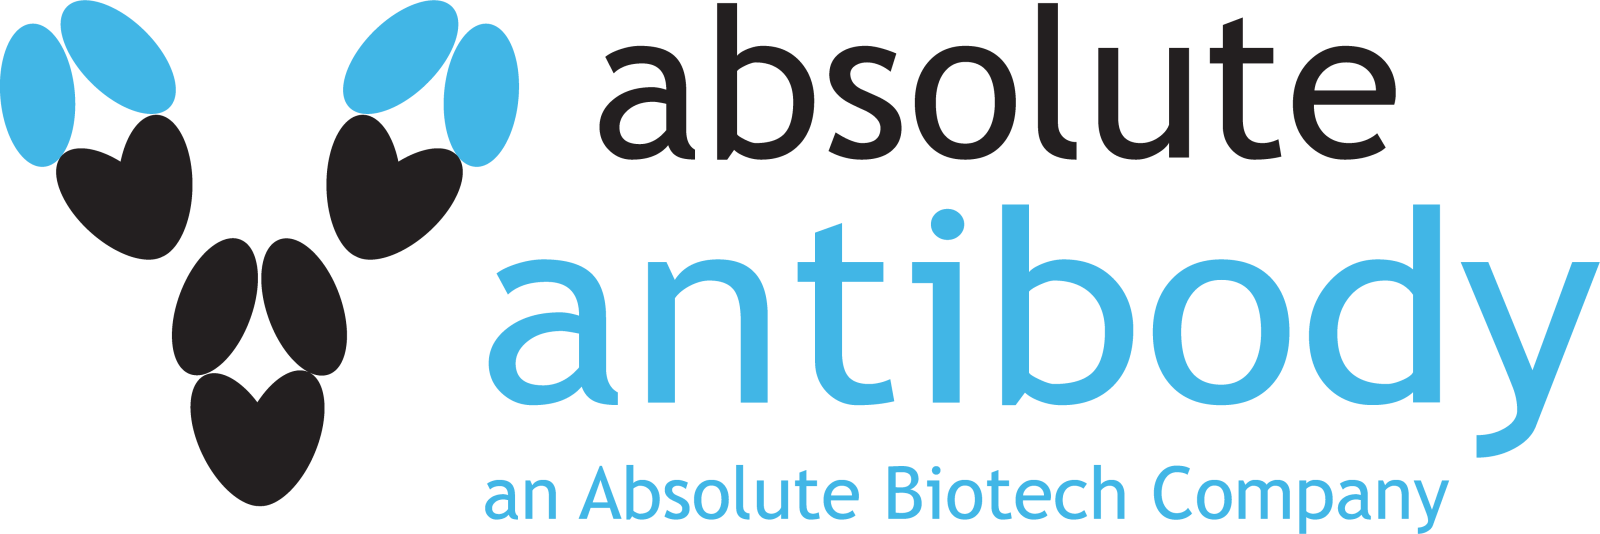 Absolute Antibody